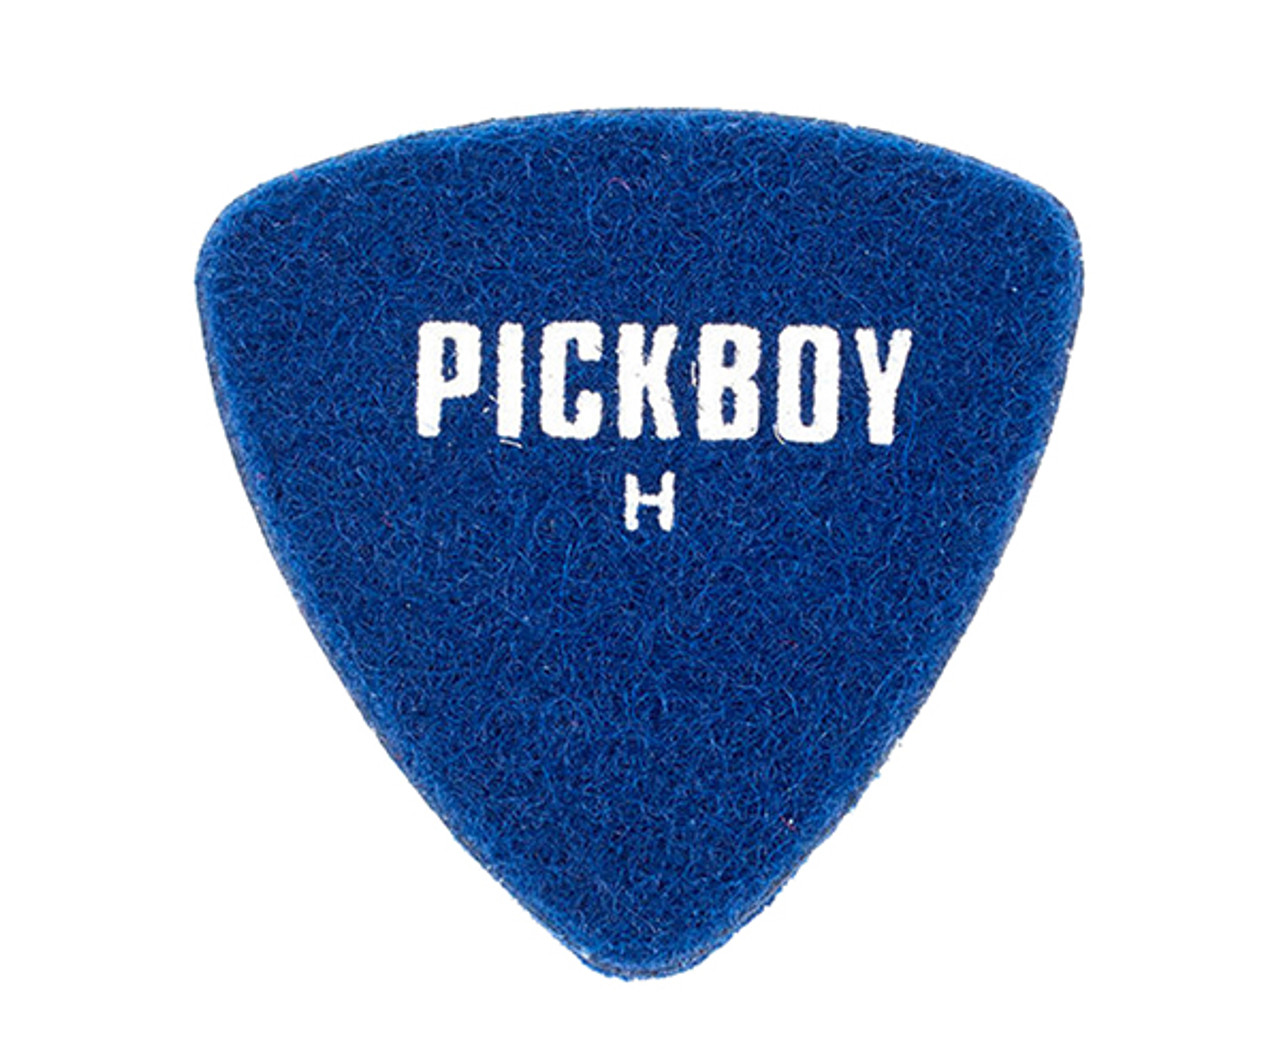 Pickboy Felt Pick - Hard (Pack of 25)